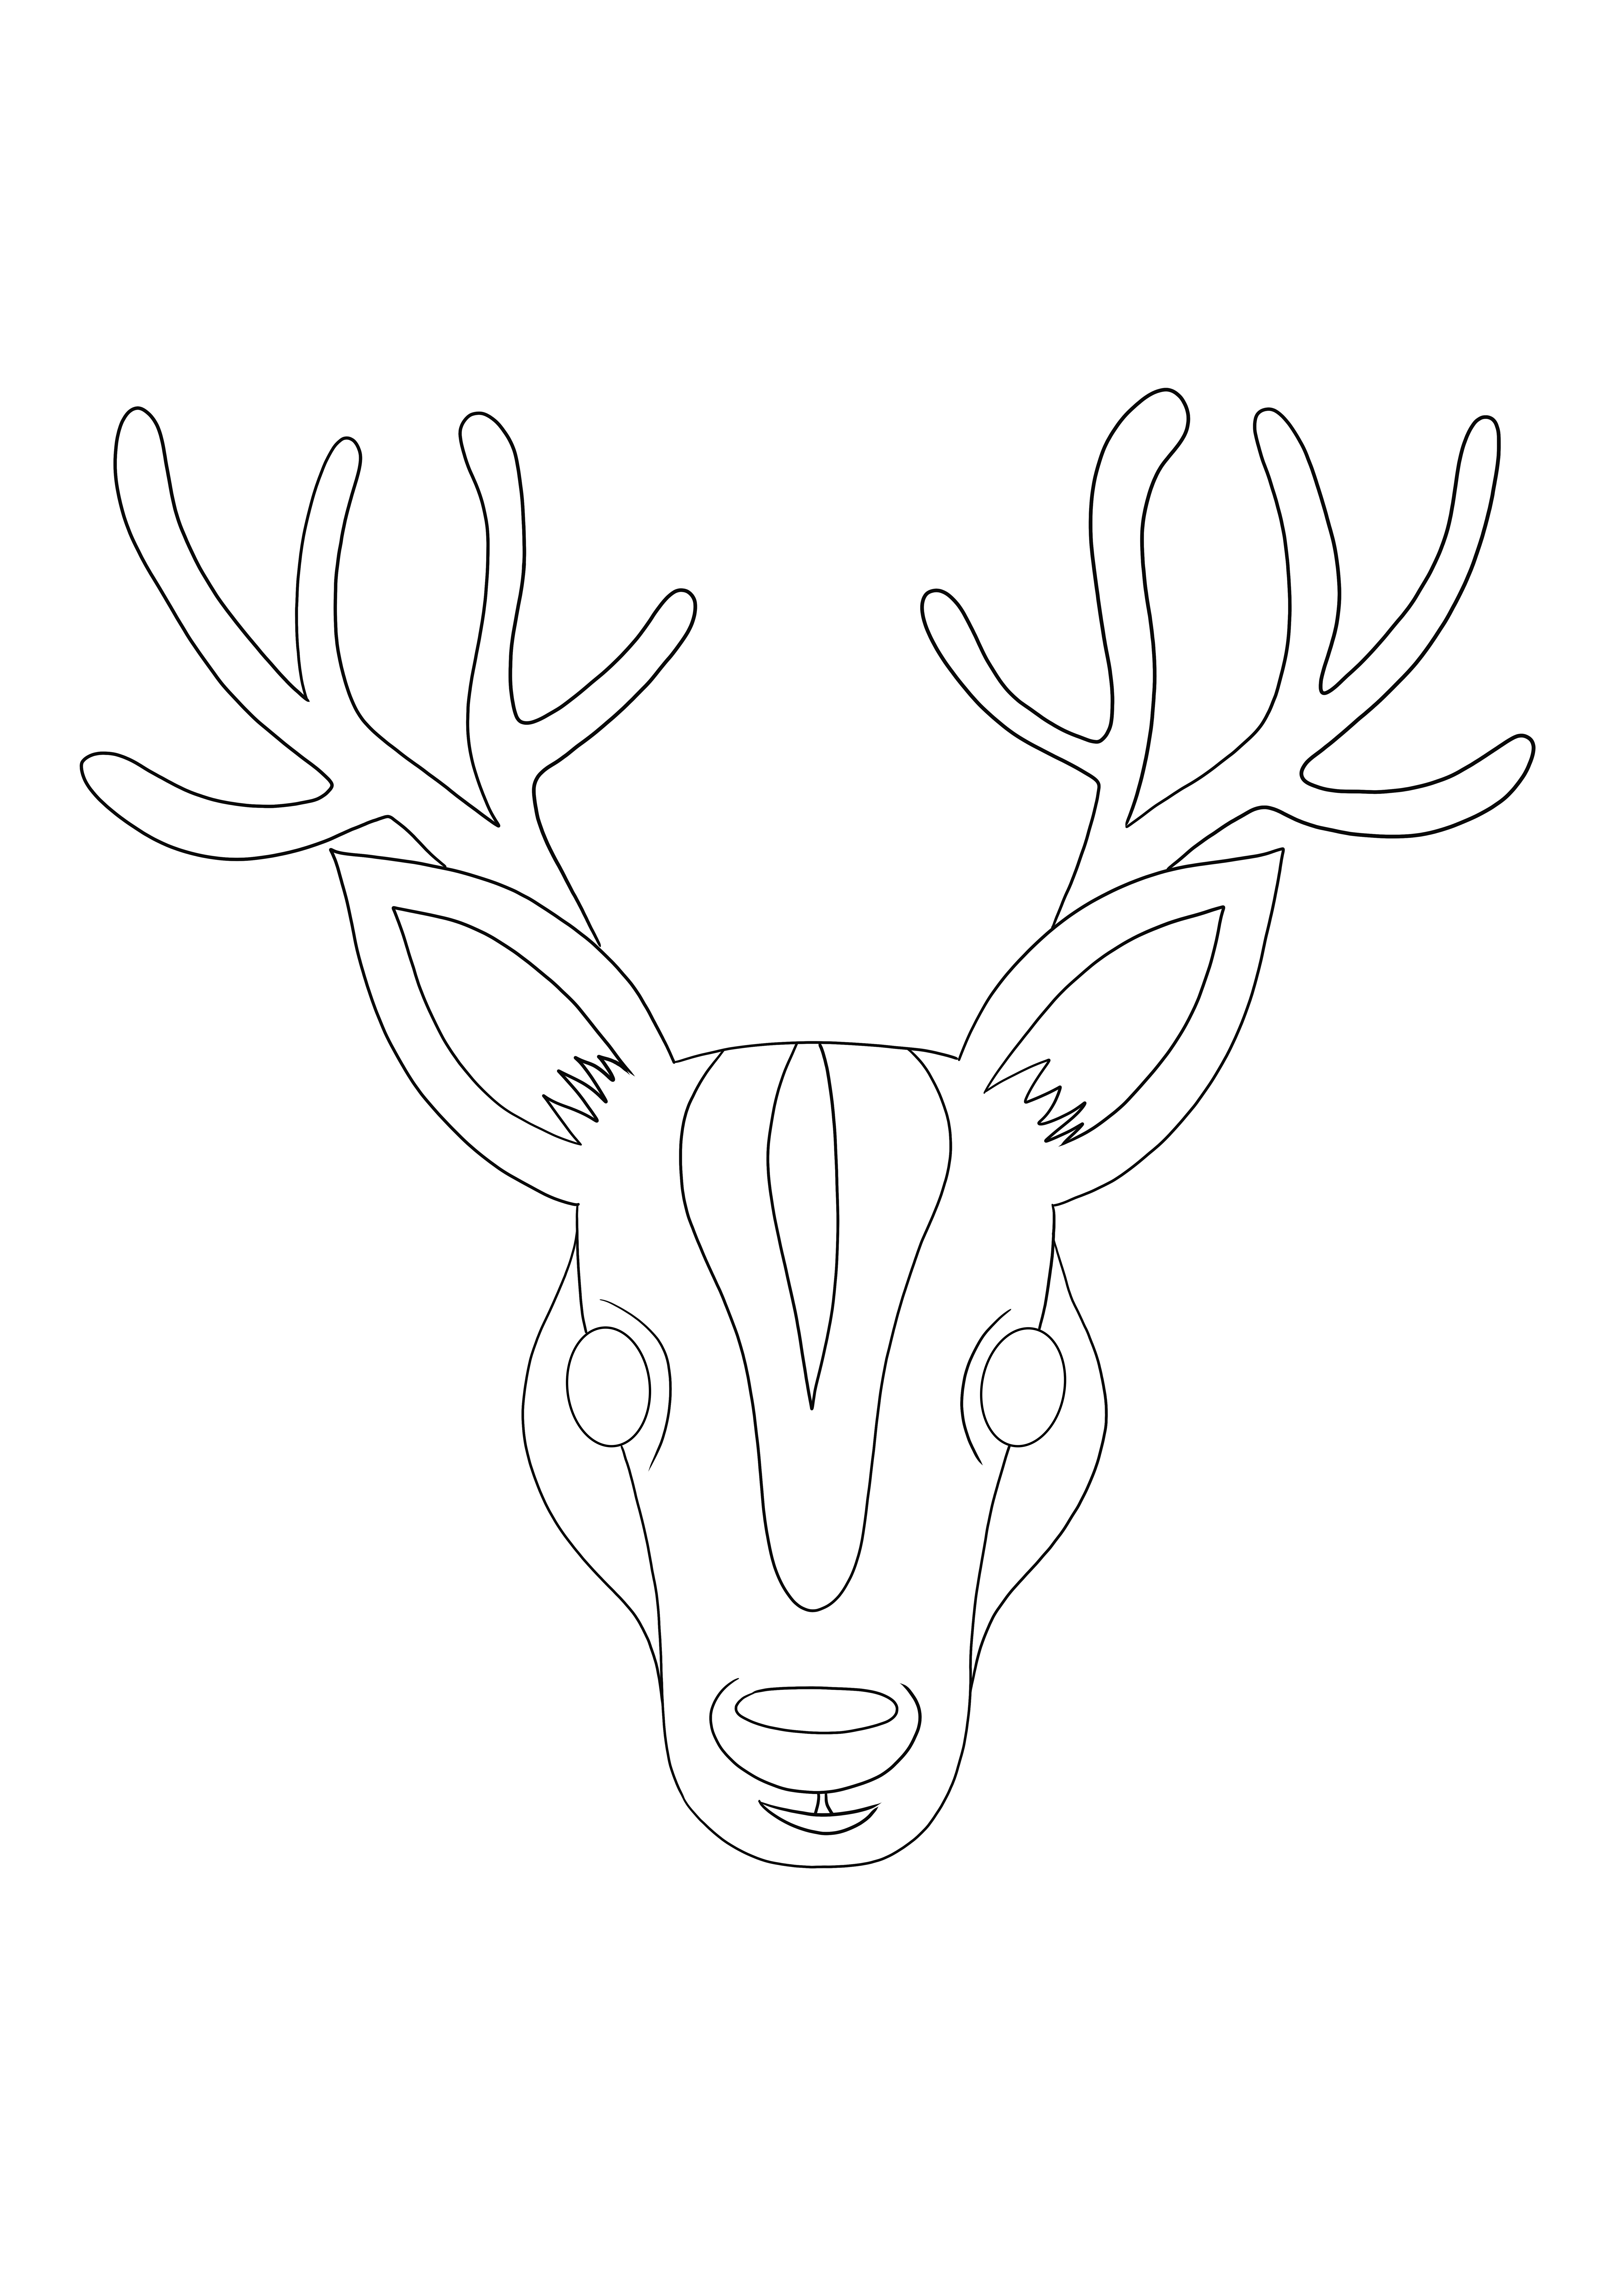 Disegni da colorare di faccia di cervo da stampare e scaricare gratuitamente per bambini di tutte le età